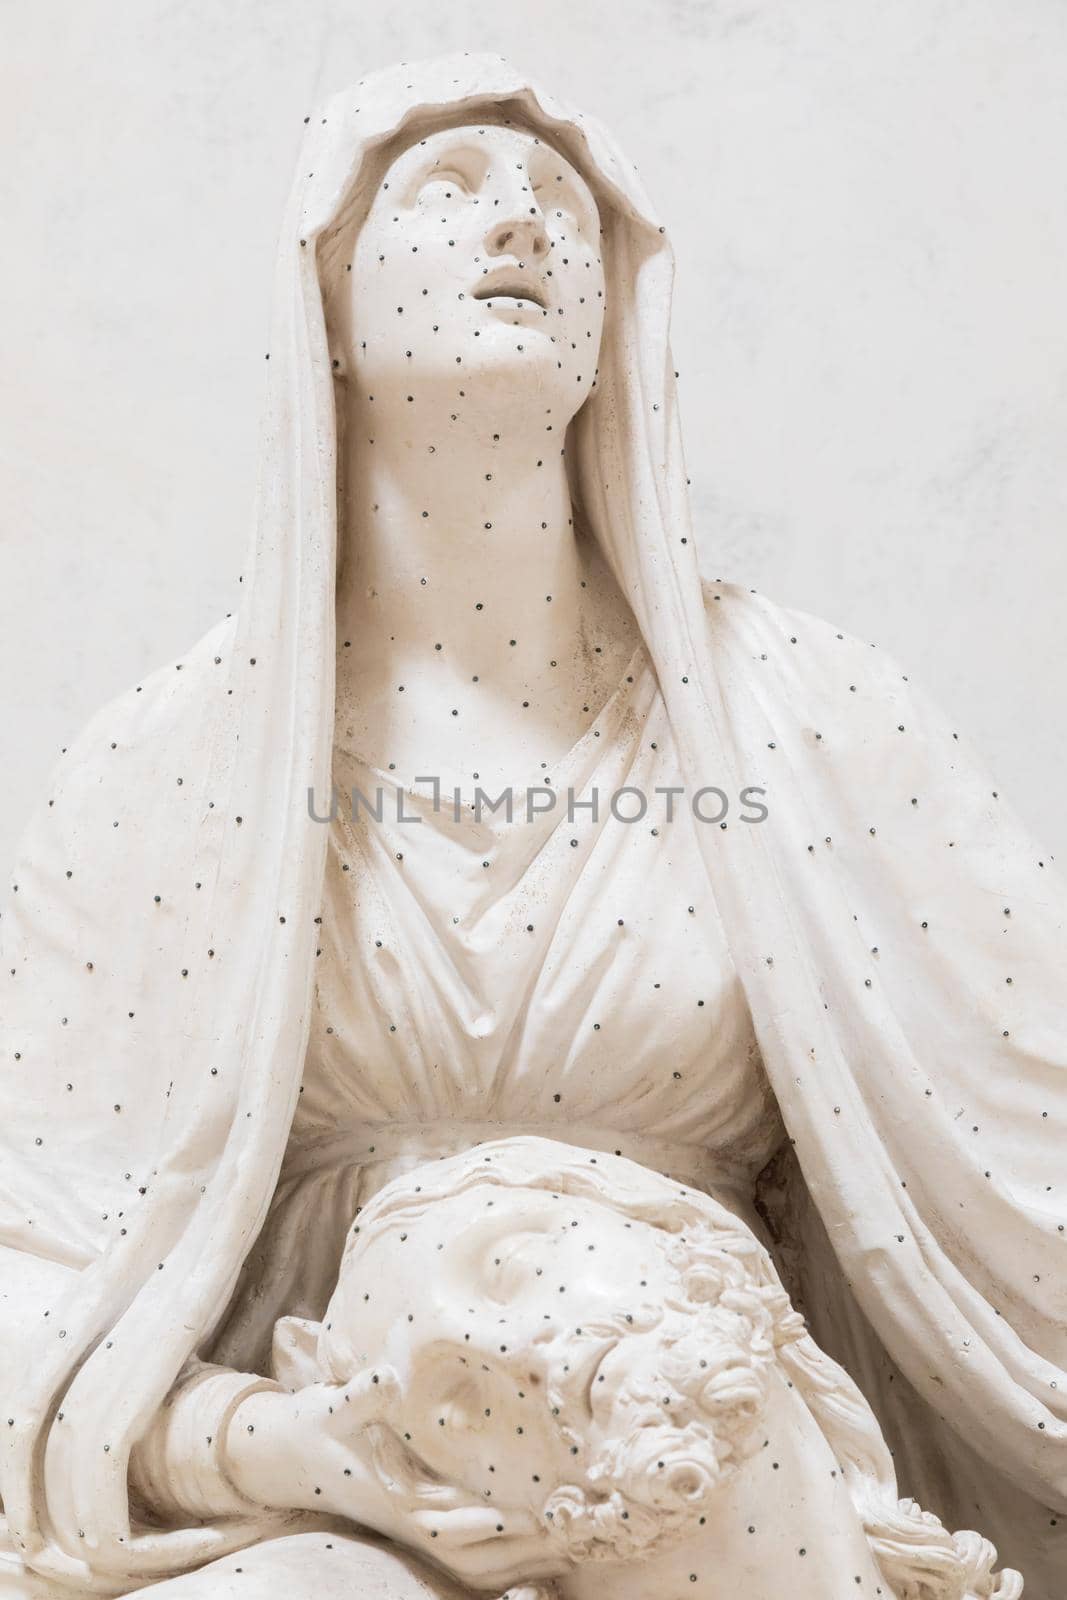 Possagno, Italy: Antonio Canova sculpture,  Lamentation over the Dead Christ - 1822 by Perseomedusa